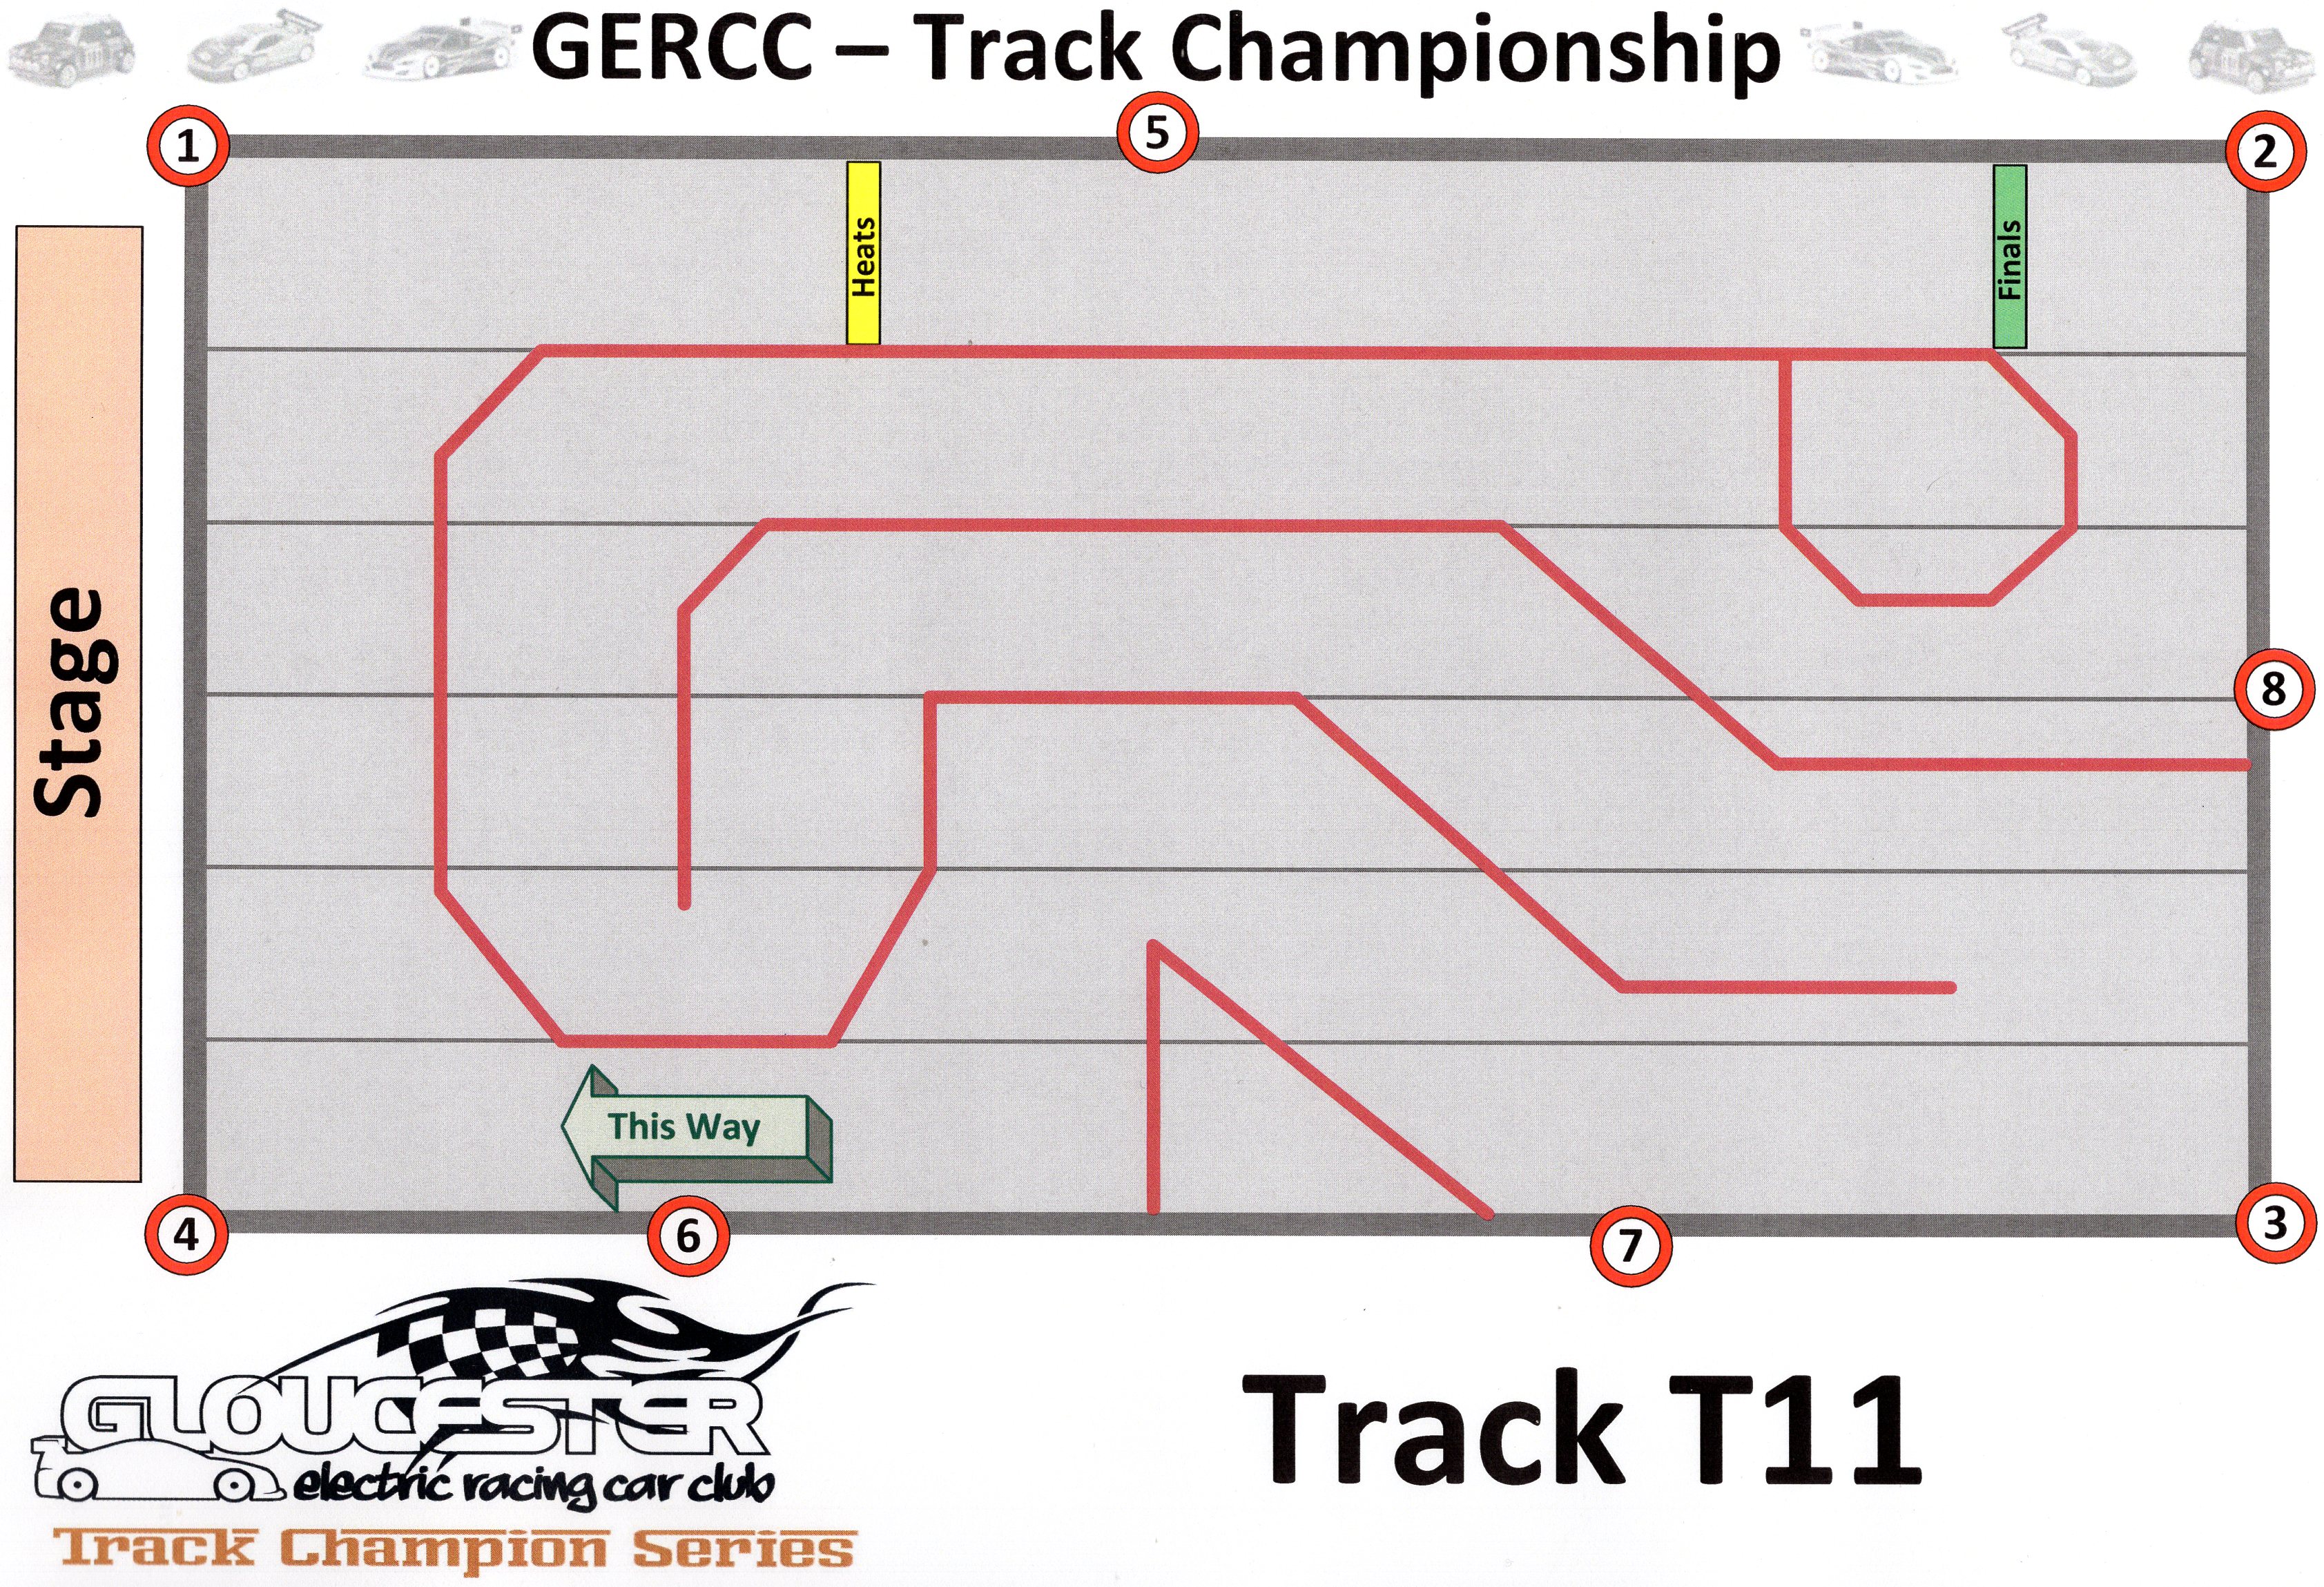 GERCC TCS Track 11